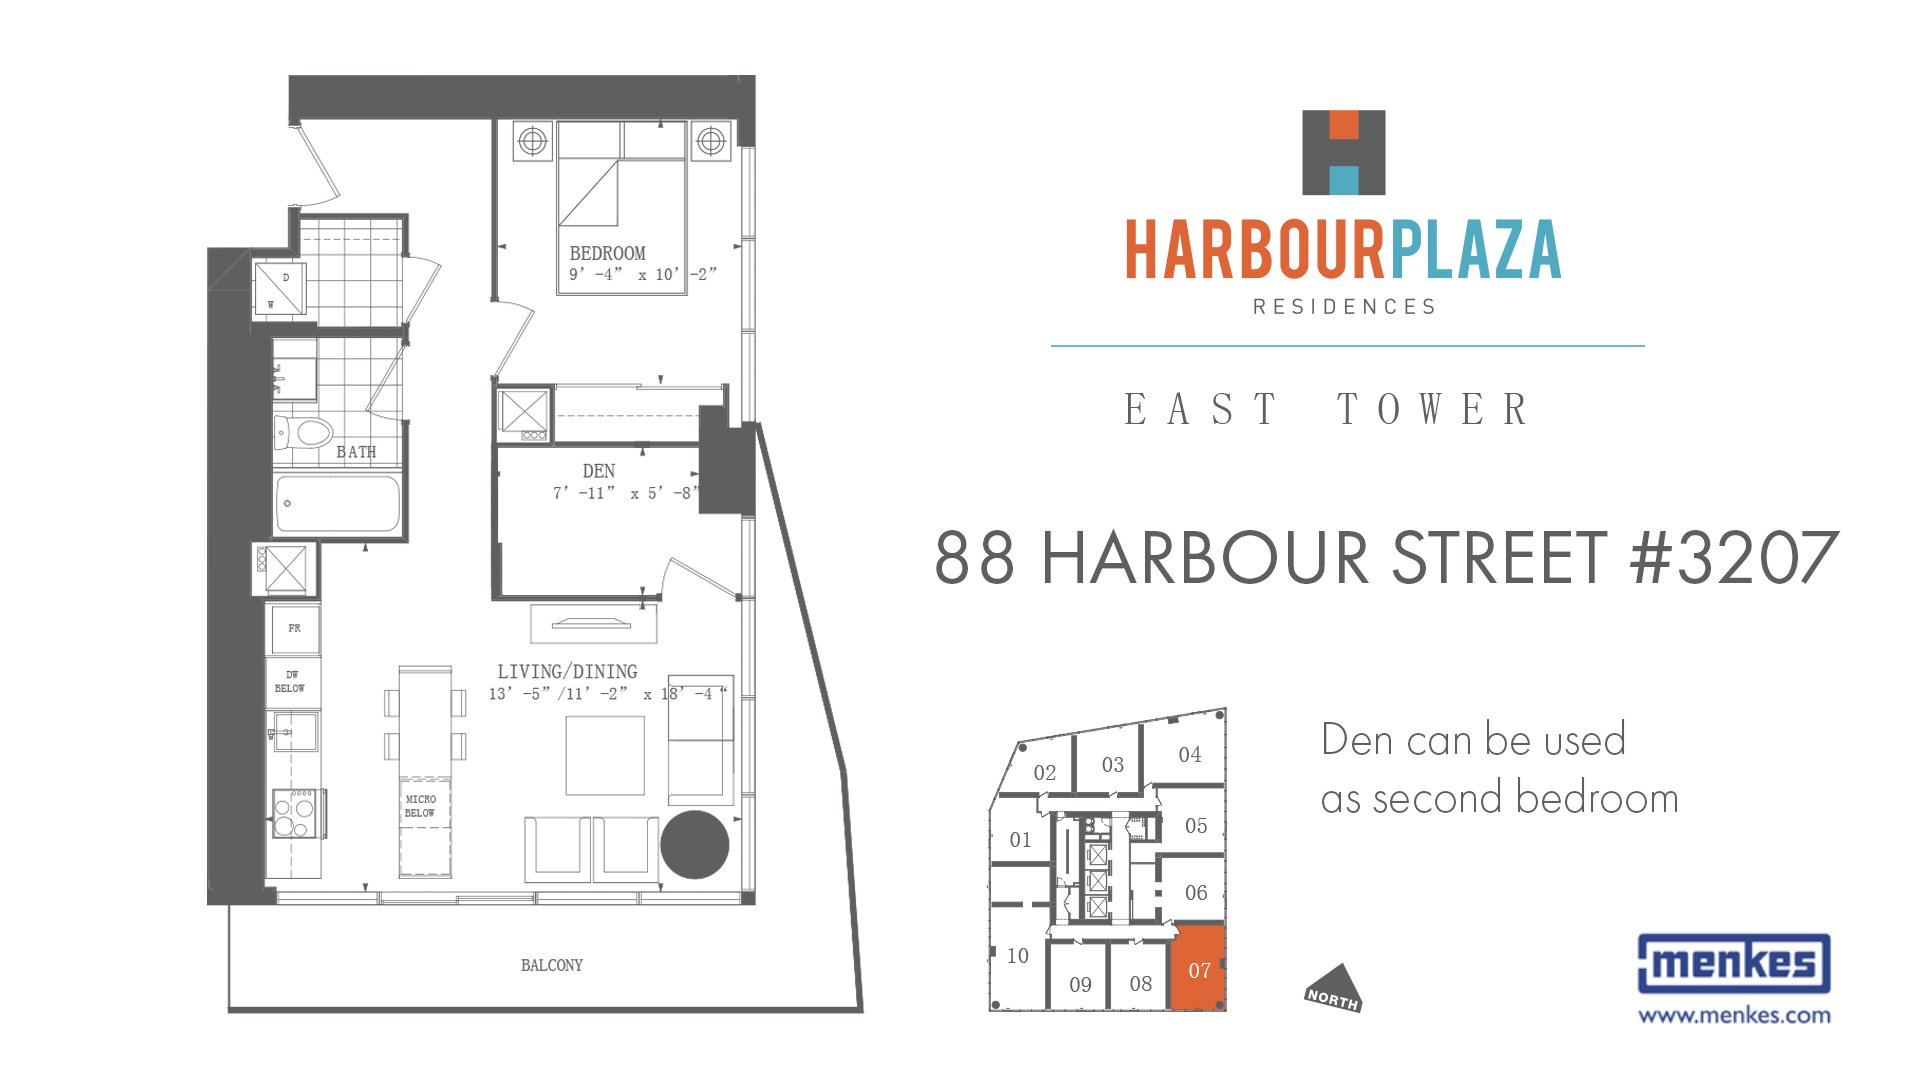 16 - 88 Harbour Street 3207 - Floor Plan With Den.jpg